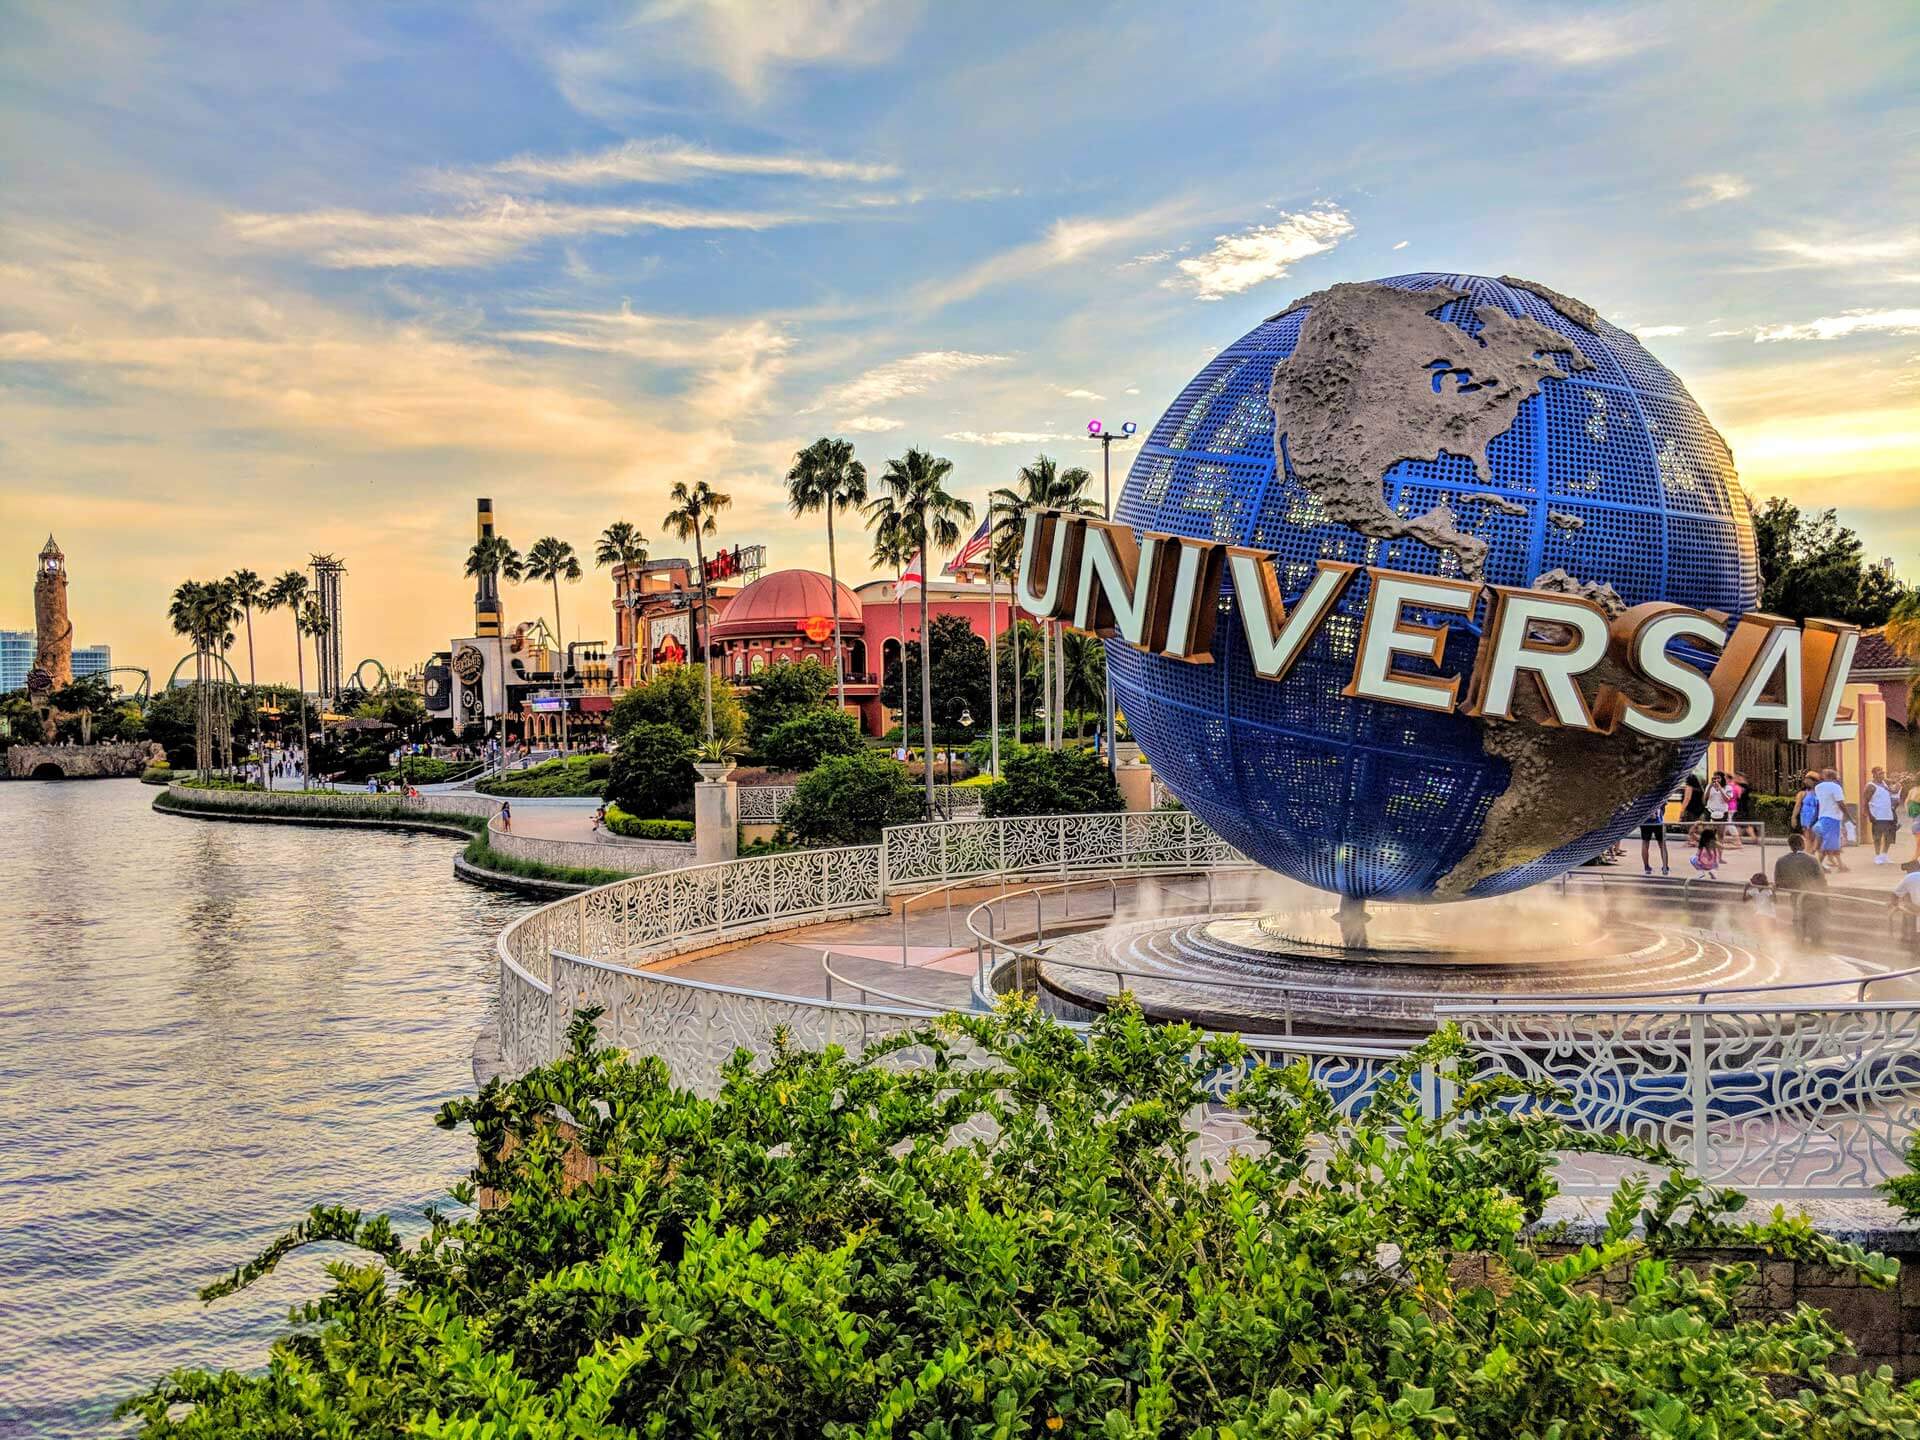 Universal Orlando